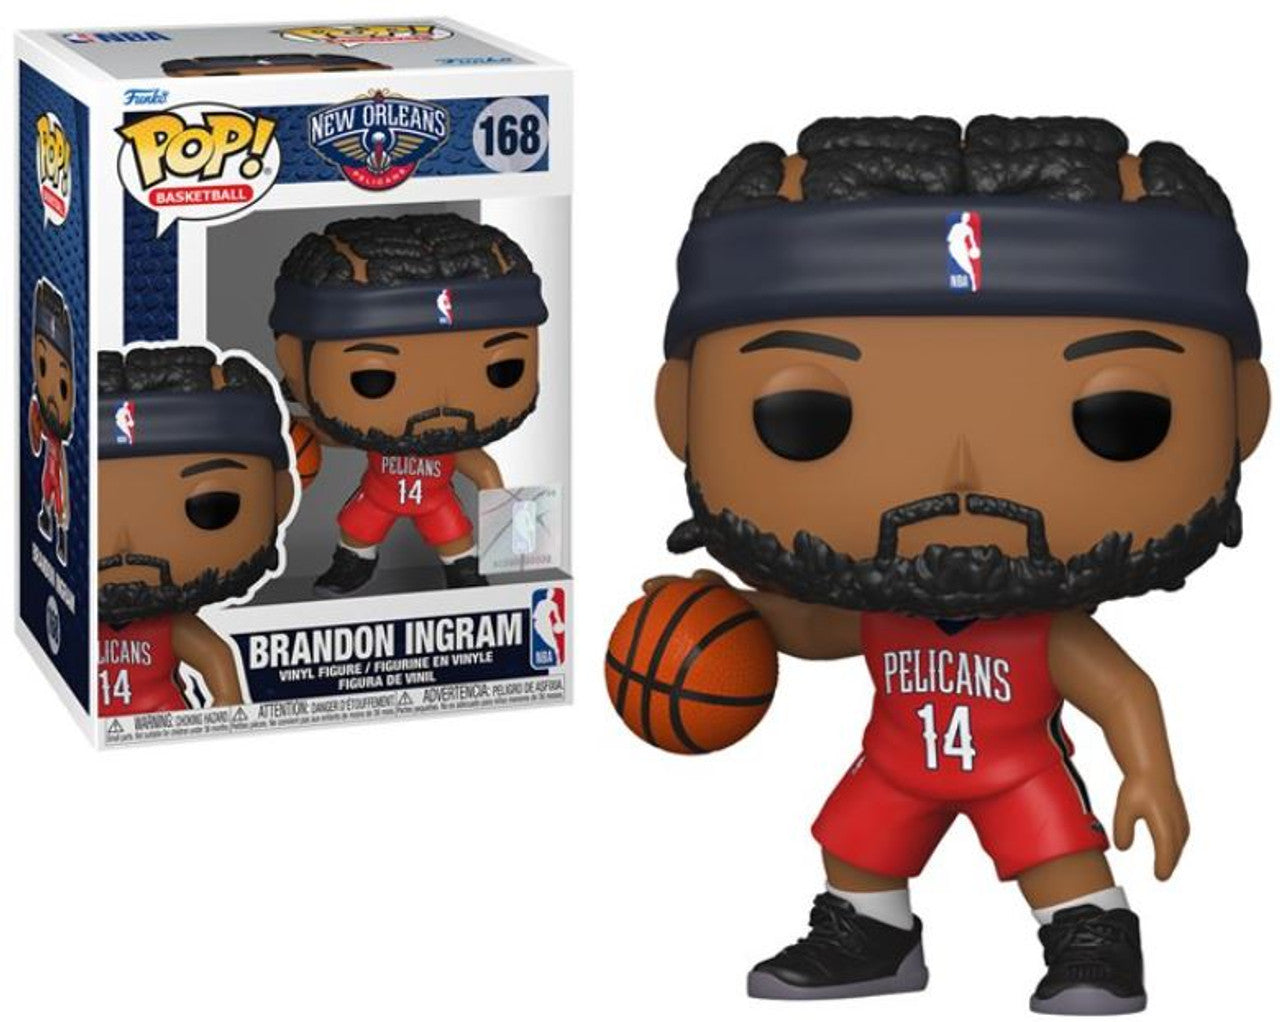 Pop! Basketball - Brandon Ingram (New Orleans Pelicans)